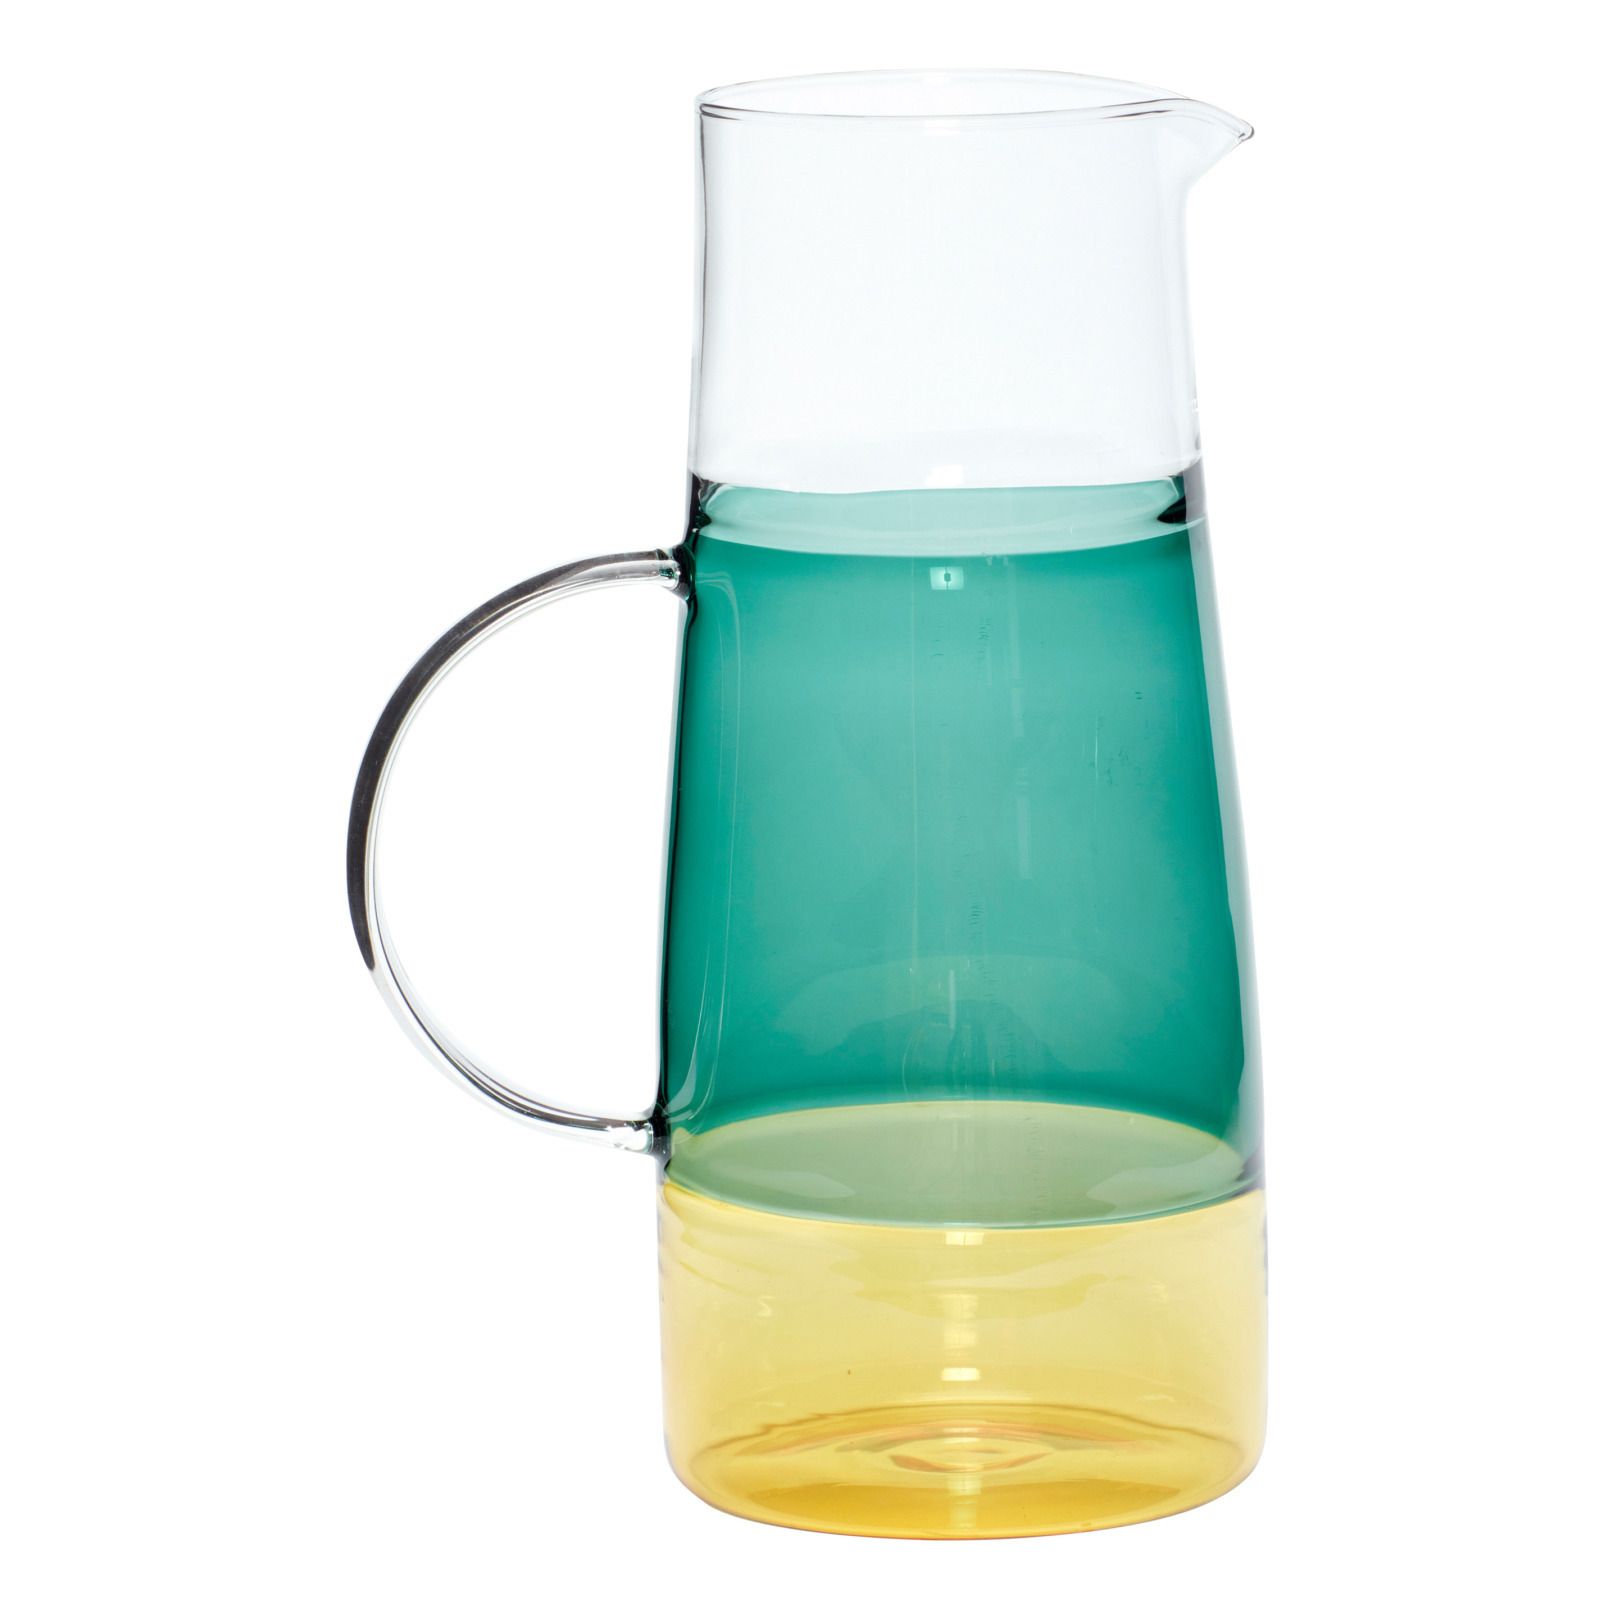 Hubsch - Carafe en verre - 1,3 l - Vert d'eau